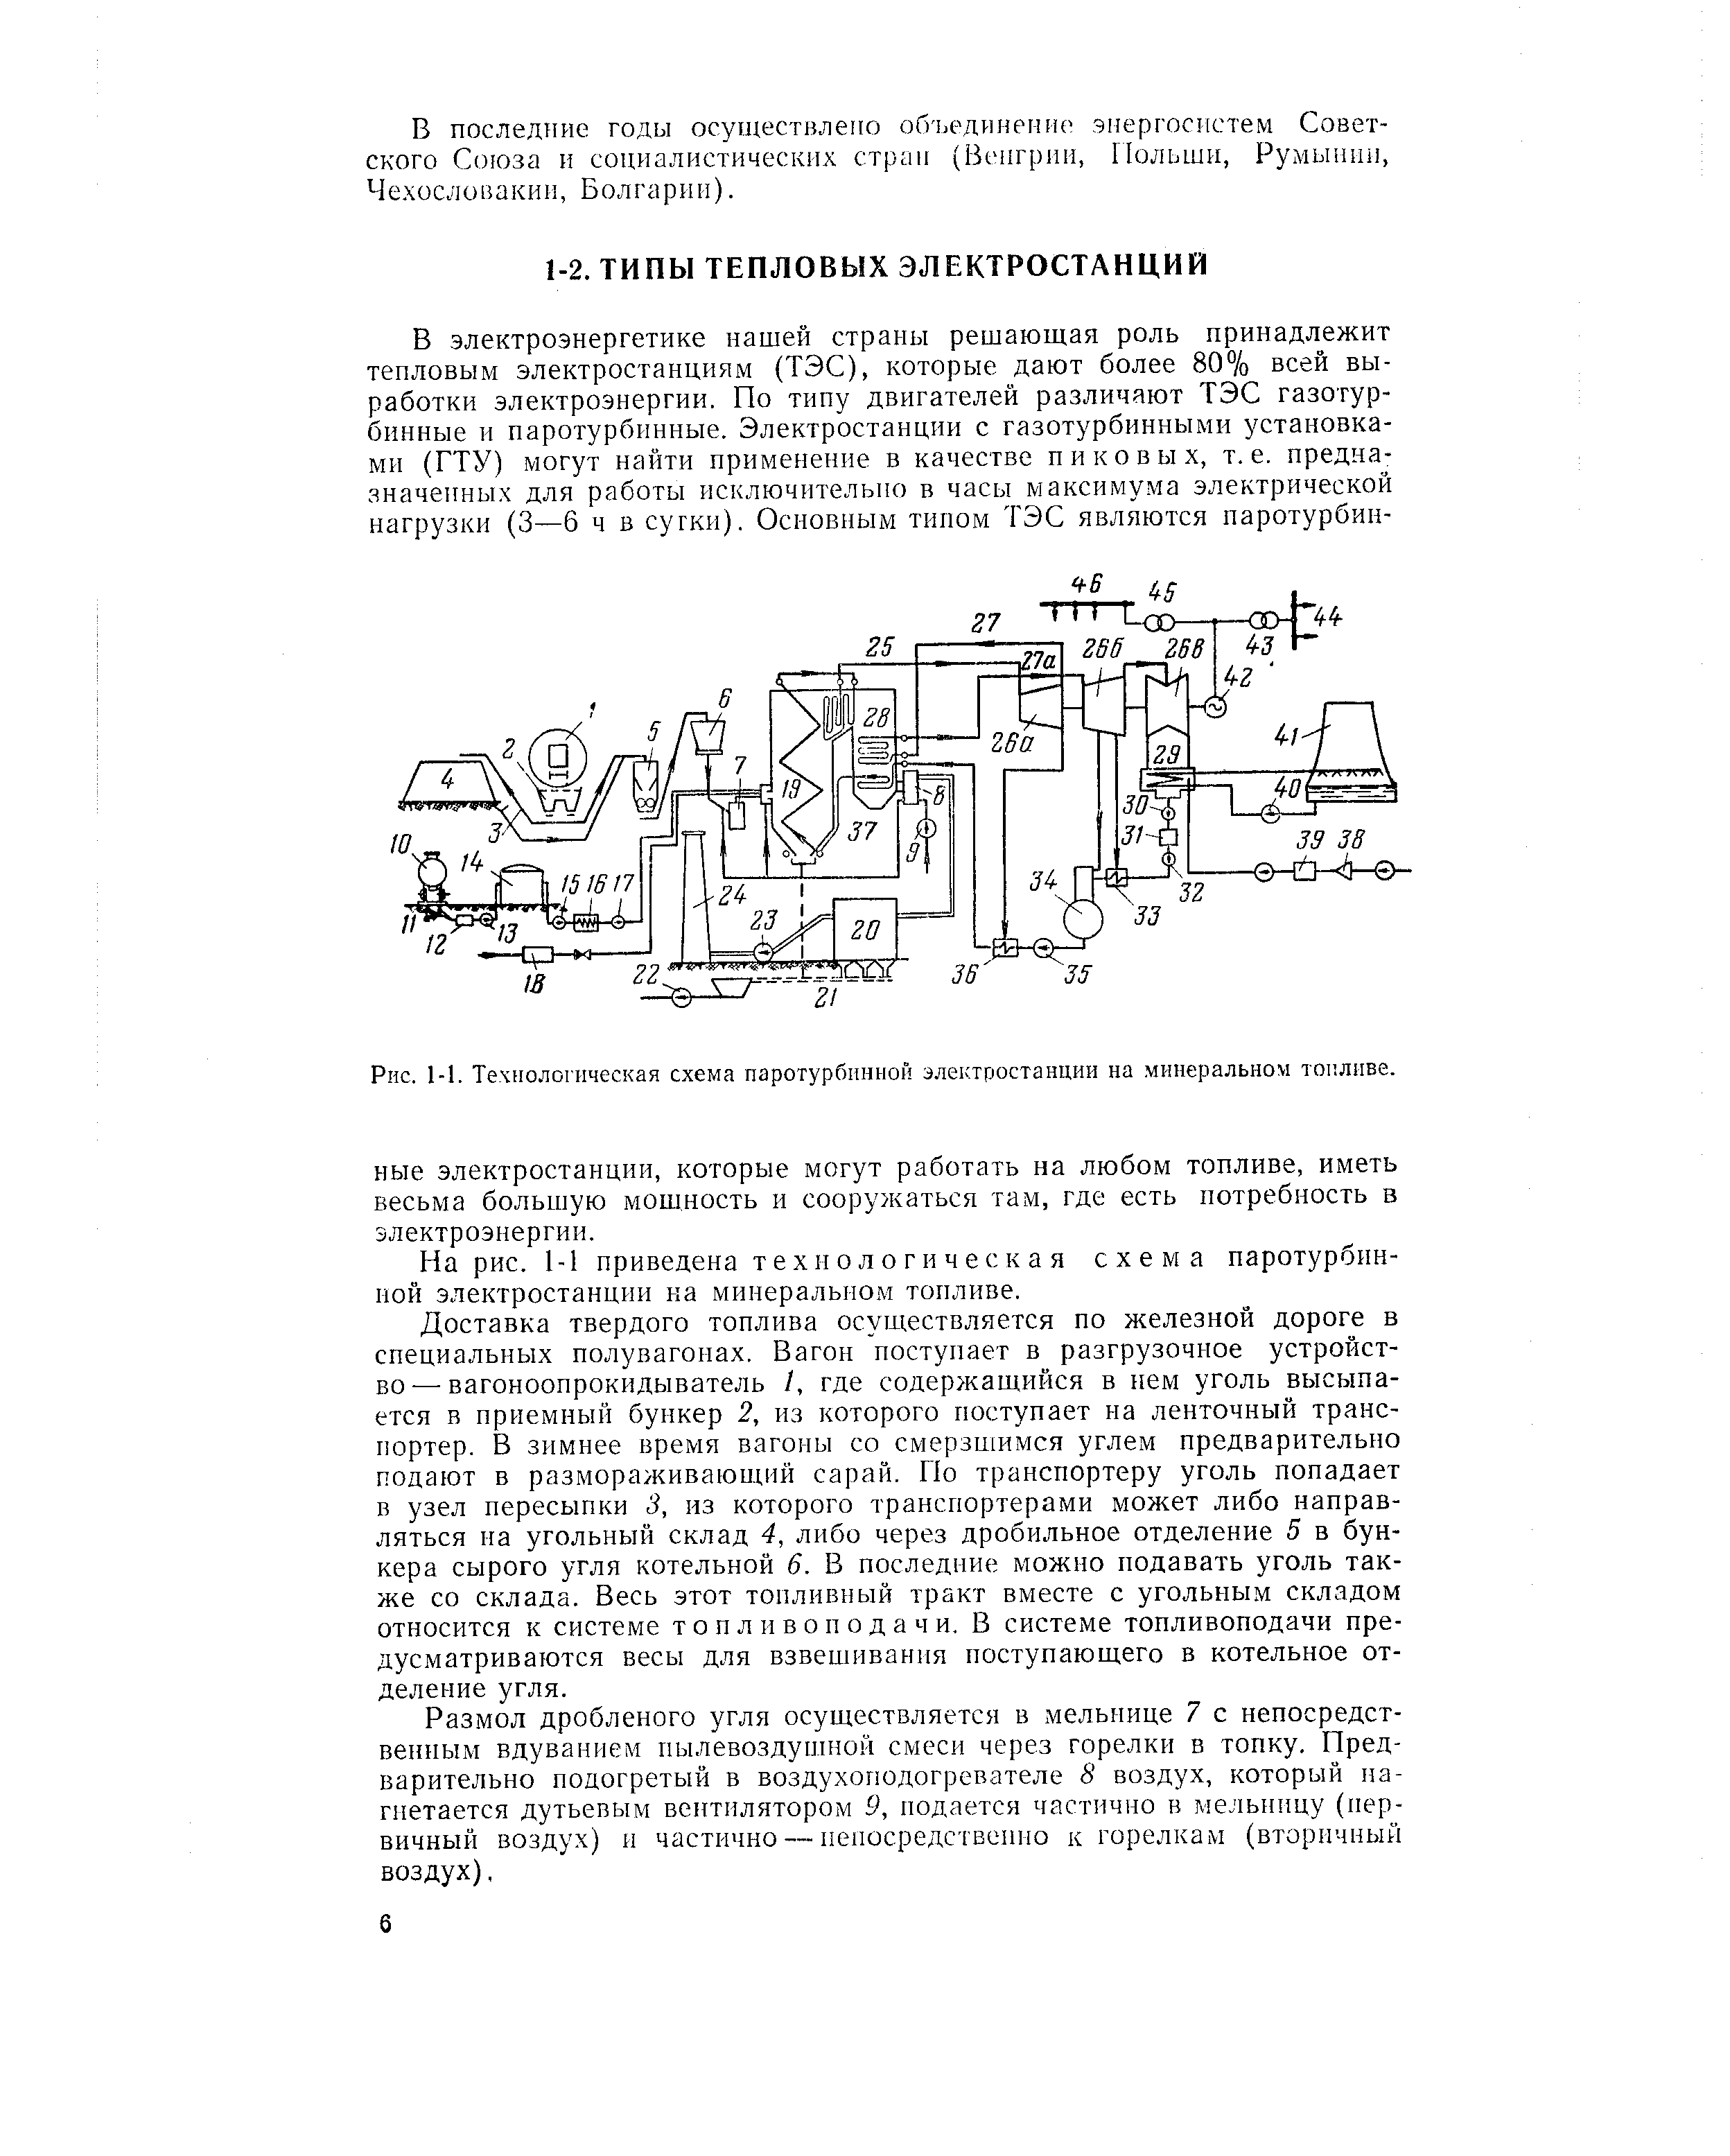 Рис. 1-1. Технологическая схема паротурбинной электростанции на минеральном тоиливе.
